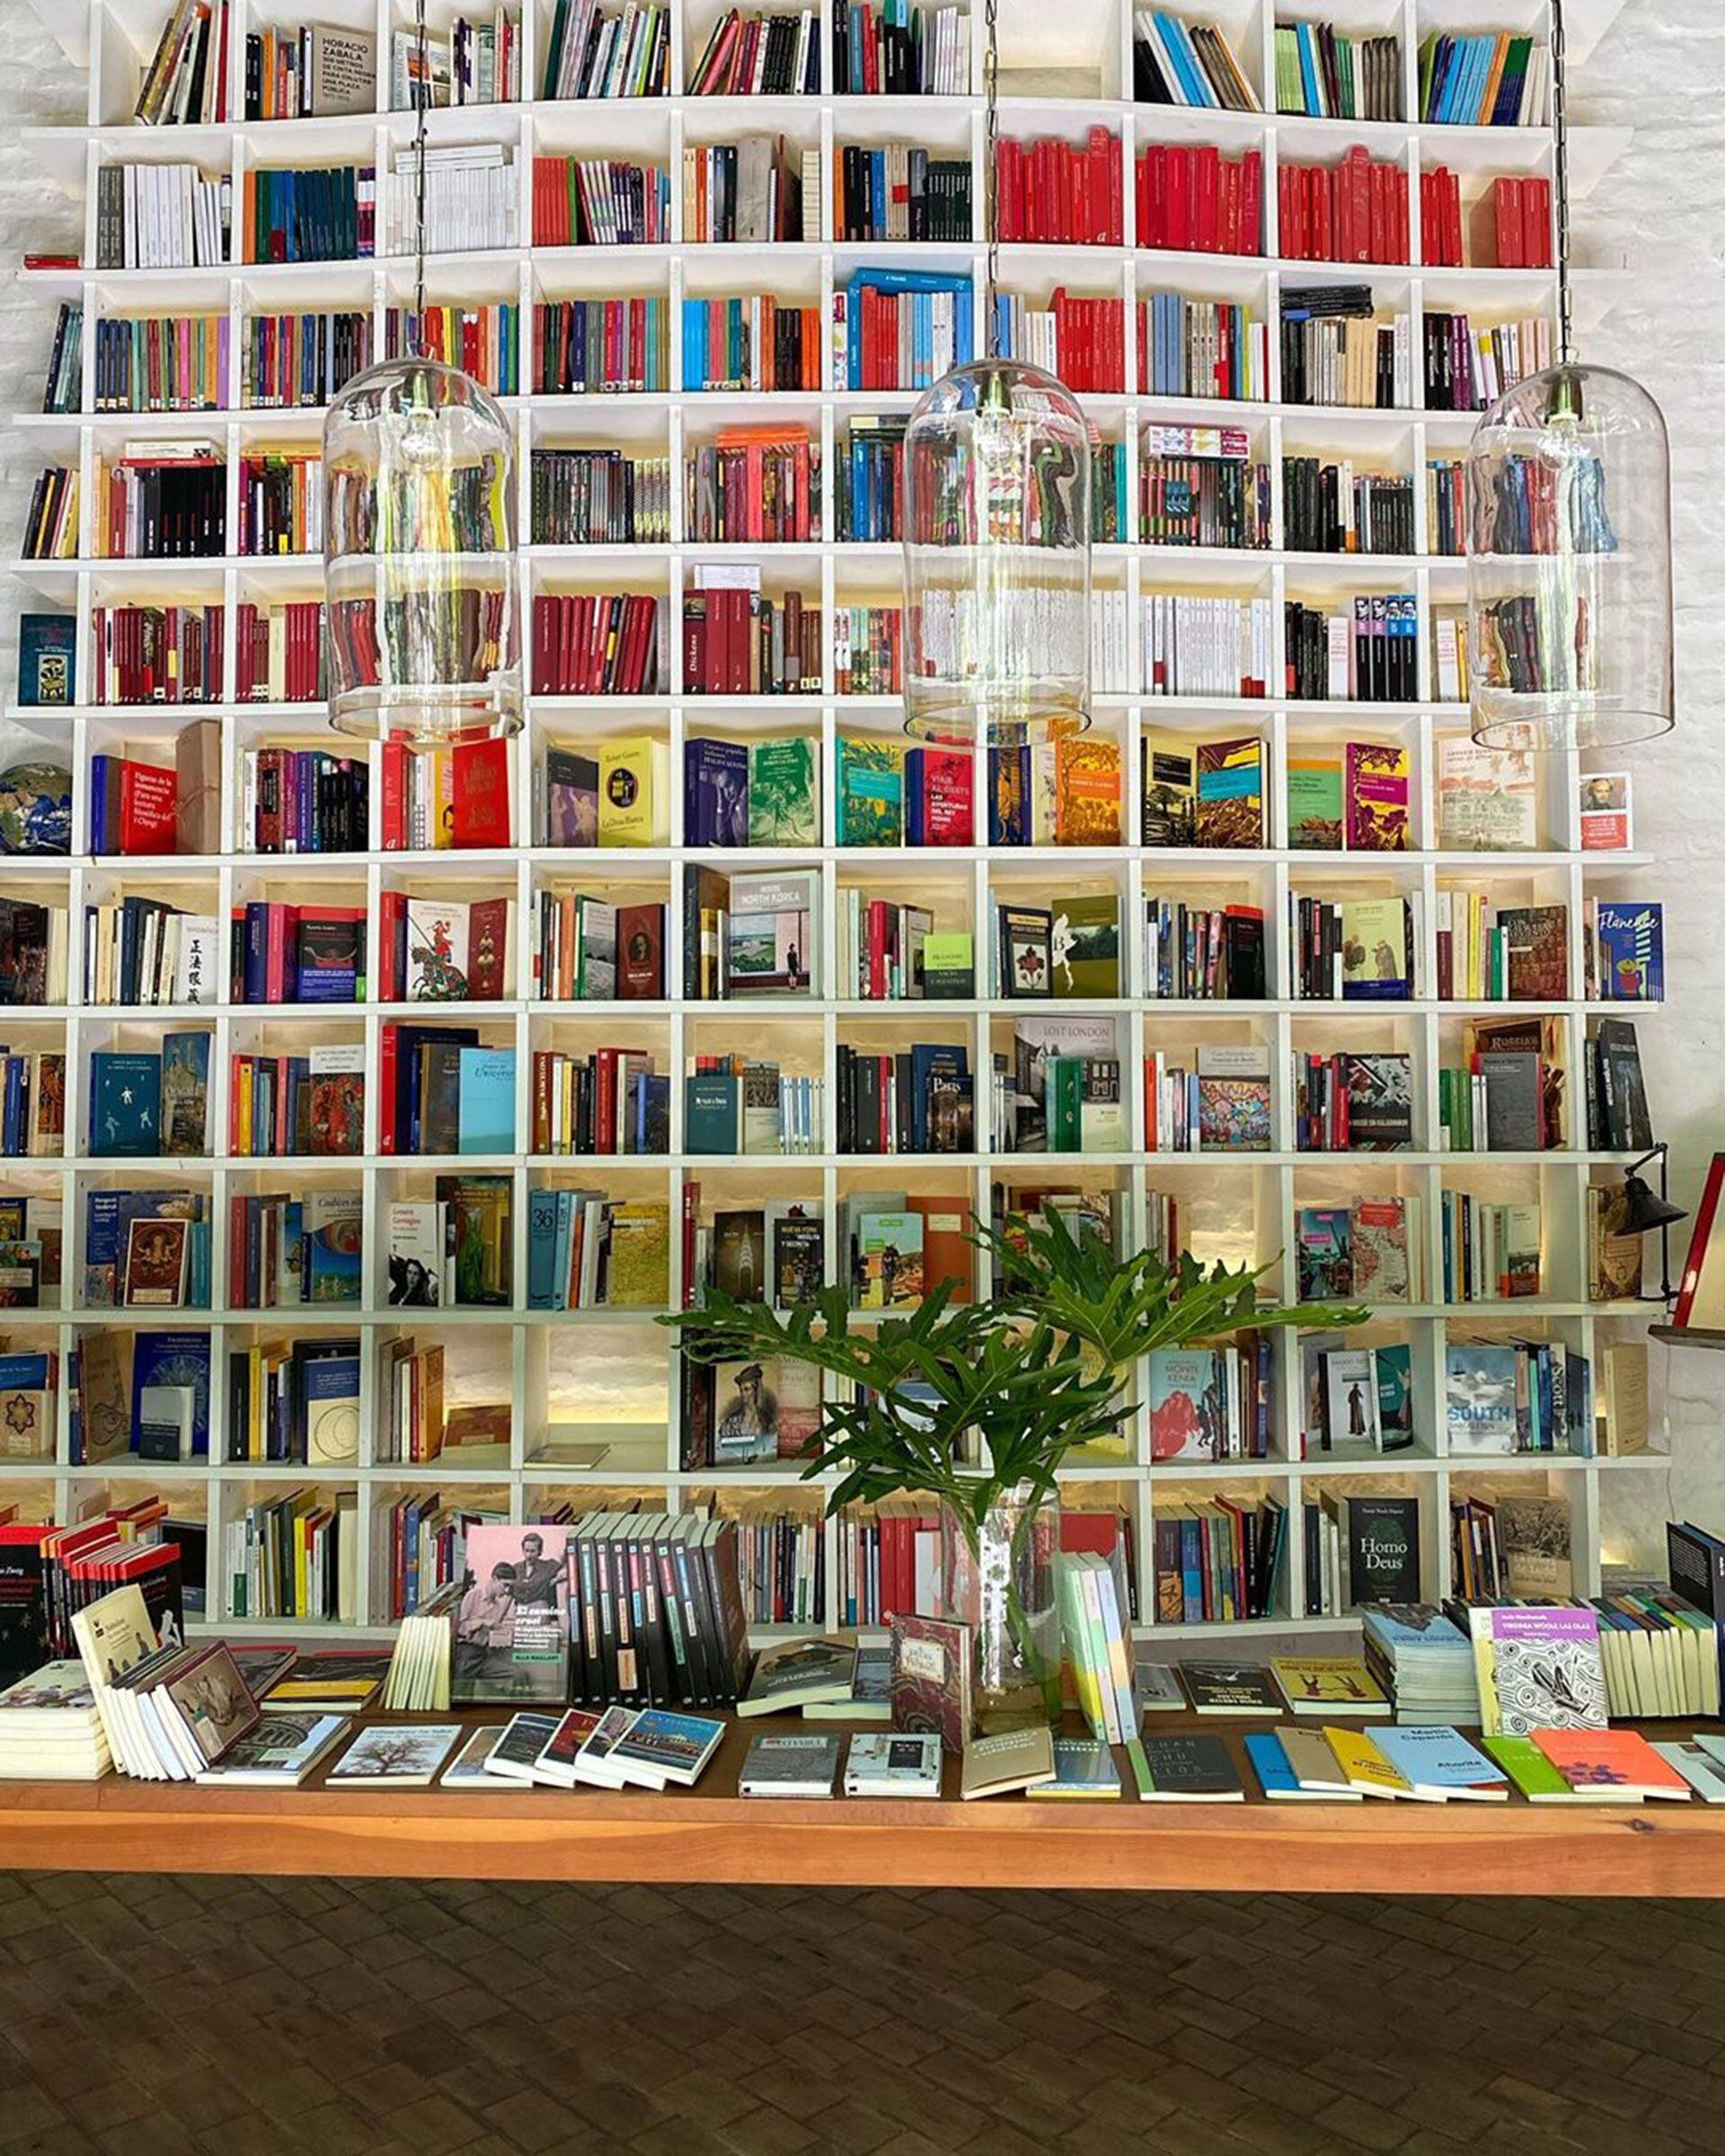 Falena es una librería y cafetería escondidas (Instagram @derfernando)